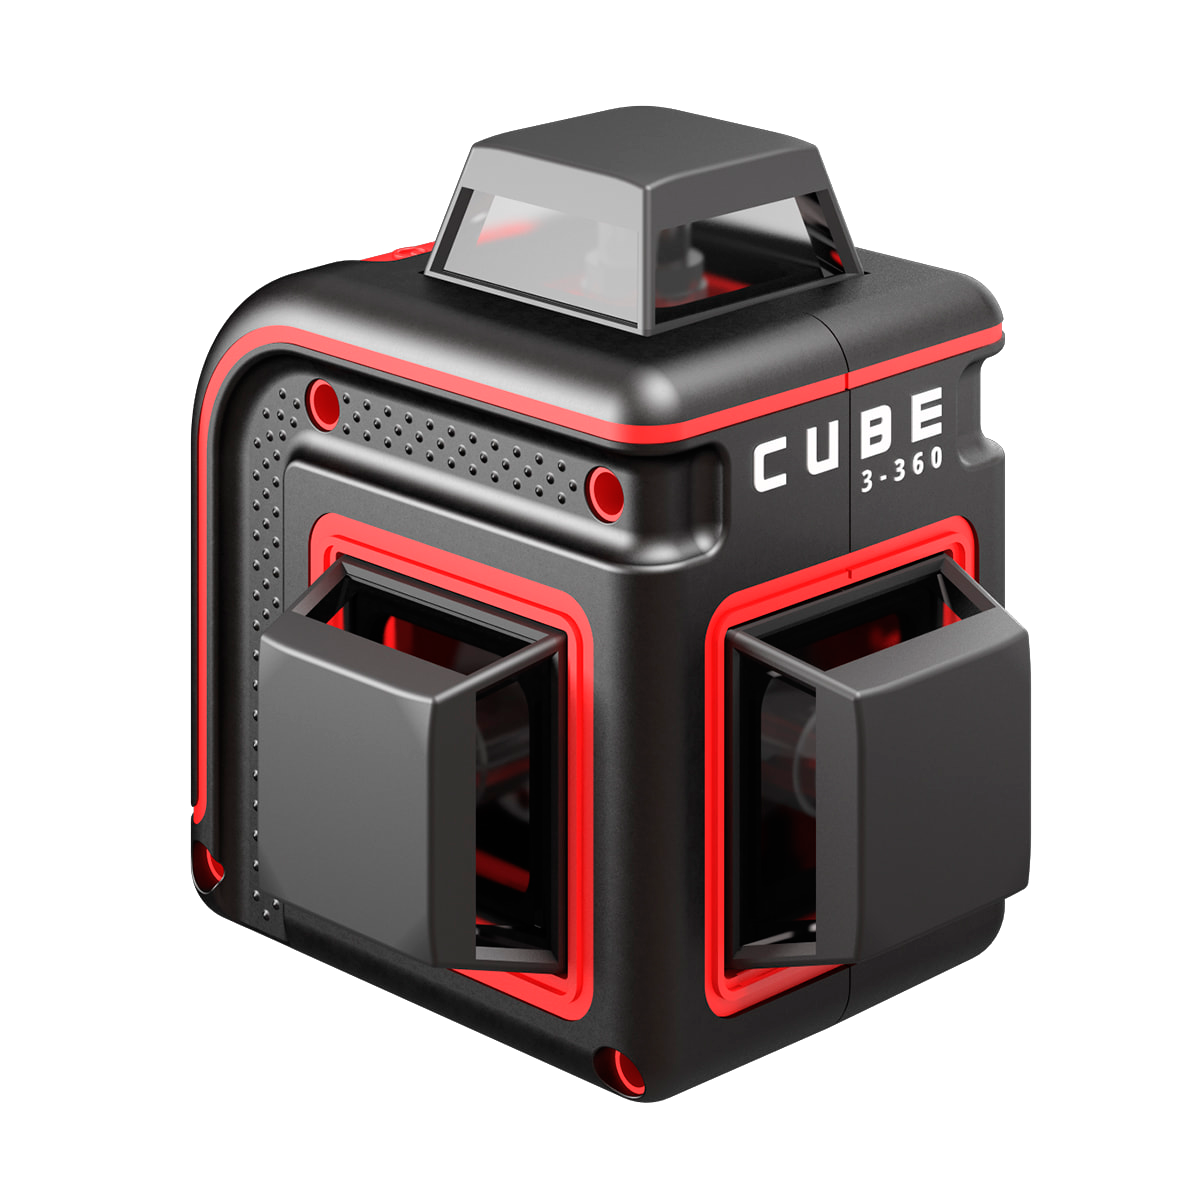 Лазерный уровень cube basic edition. Лазерный уровень ada Cube 3-360 Home Edition а00565. Нивелир лазерный ada Cube 360 professional Edition. Лазерный уровень ada Cube 360 Basic Edition. Лазерный уровень ada Cube 3-360 Green Basic Edition.